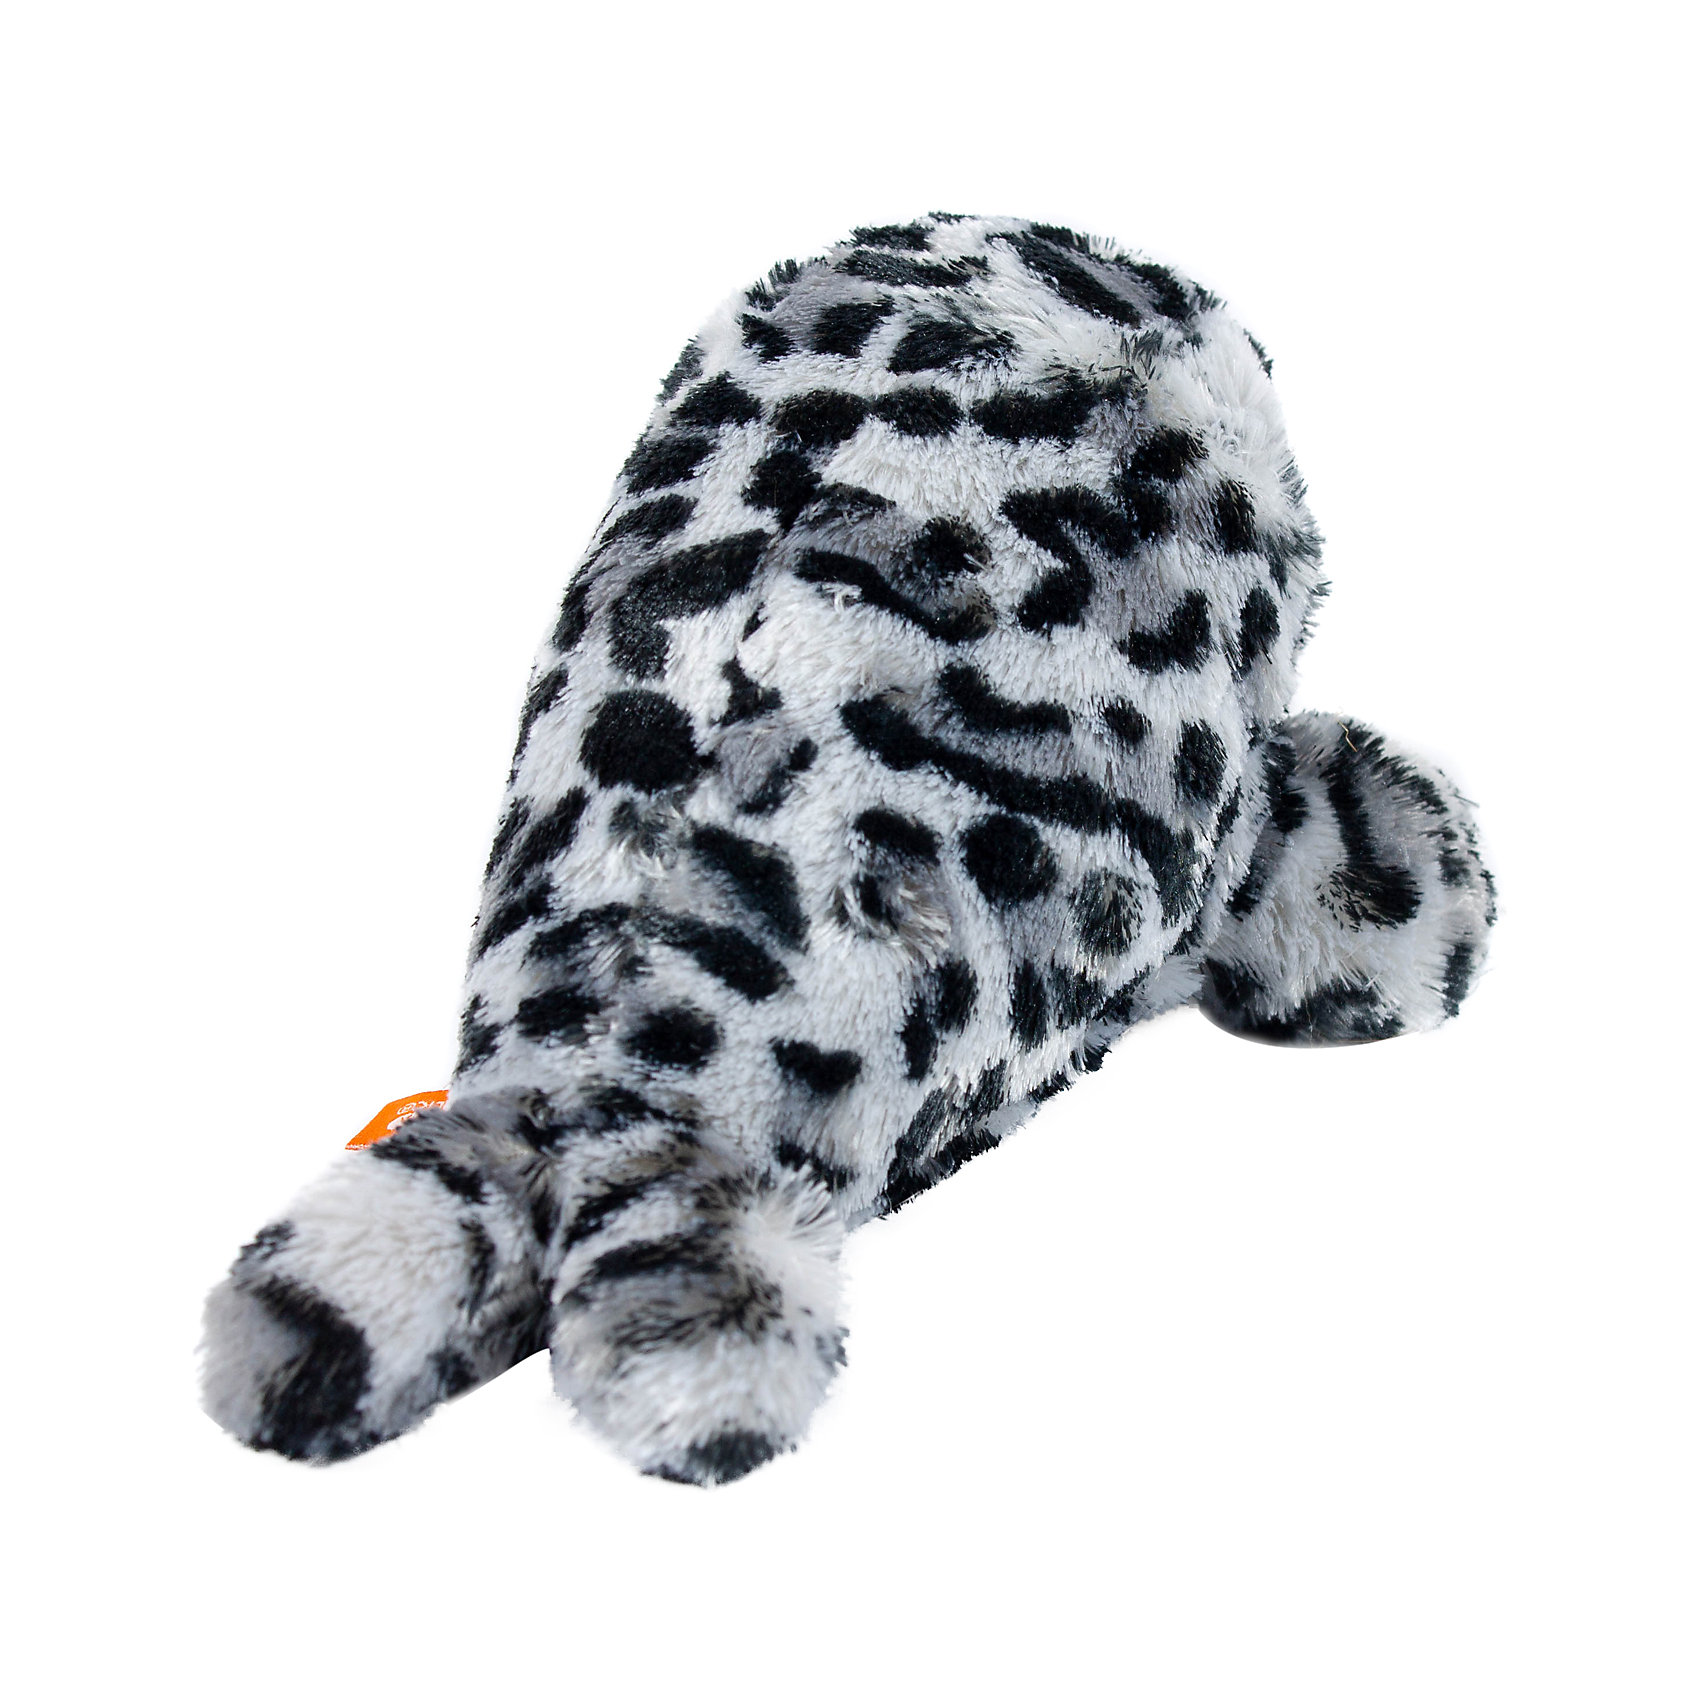 Мягкая игрушка Детеныш тюленя, 20 см Wild Republic 15012920